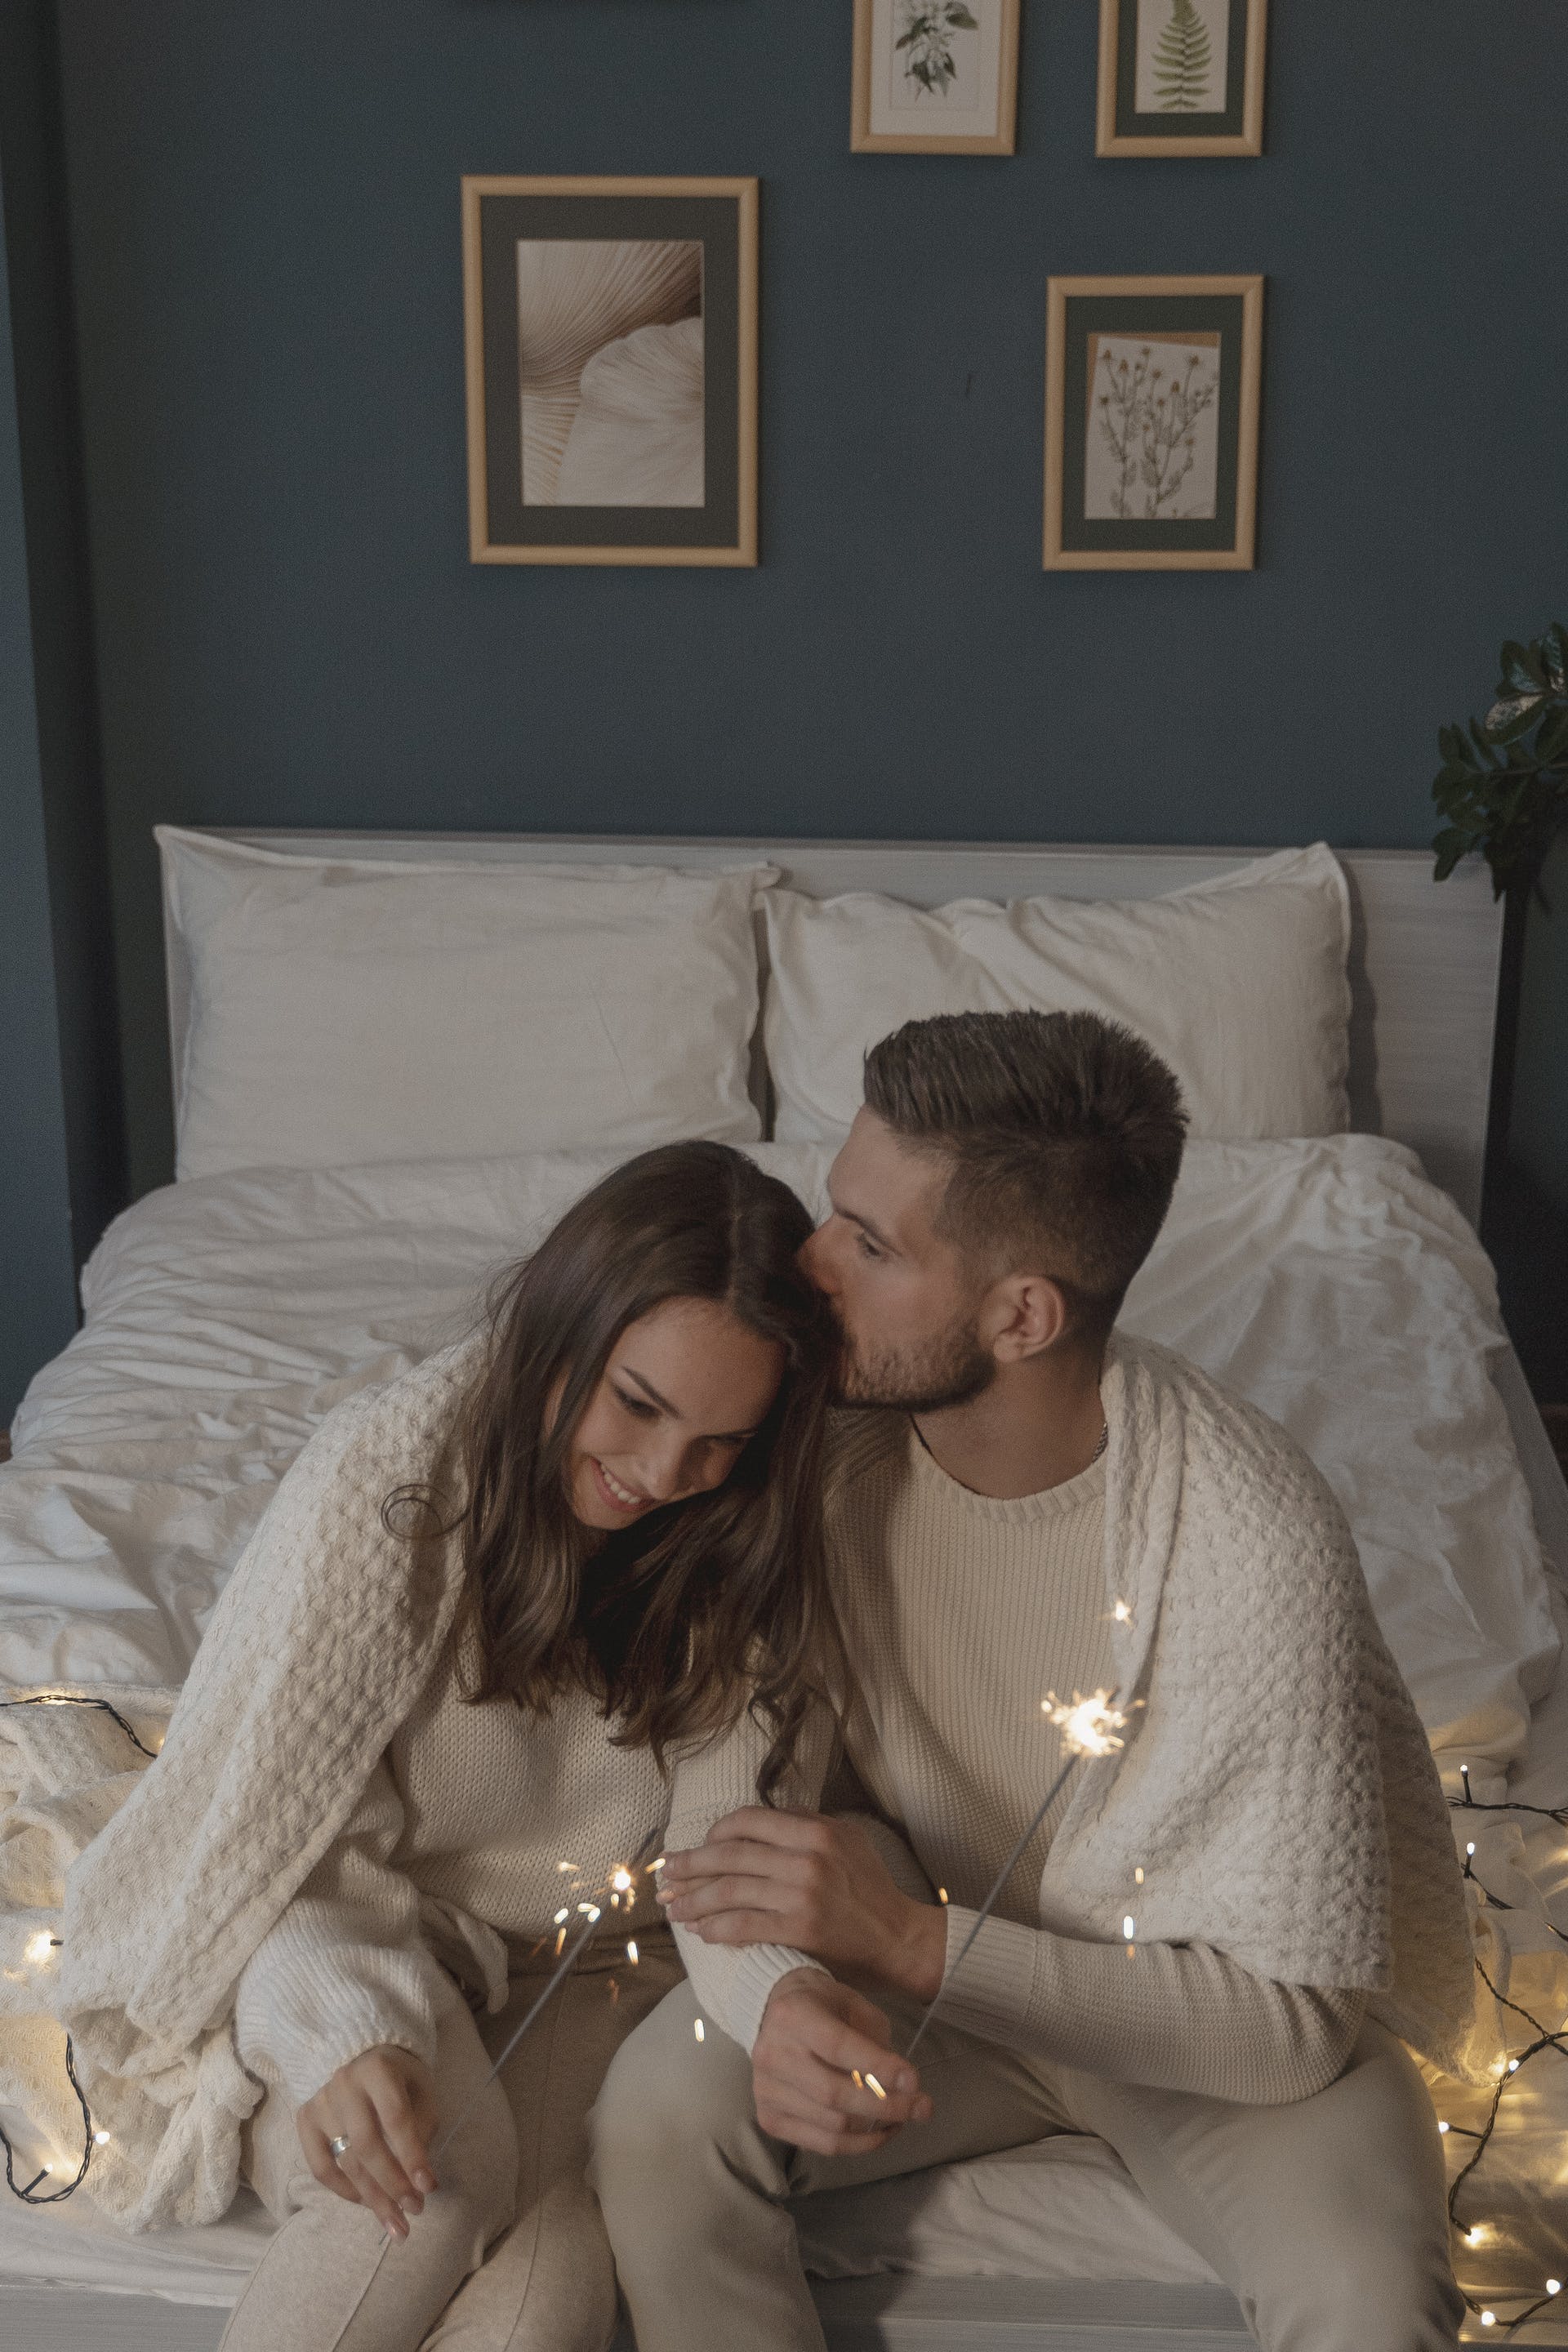 Homme embrassant une femme dans leur chambre à coucher | Source : Pexels